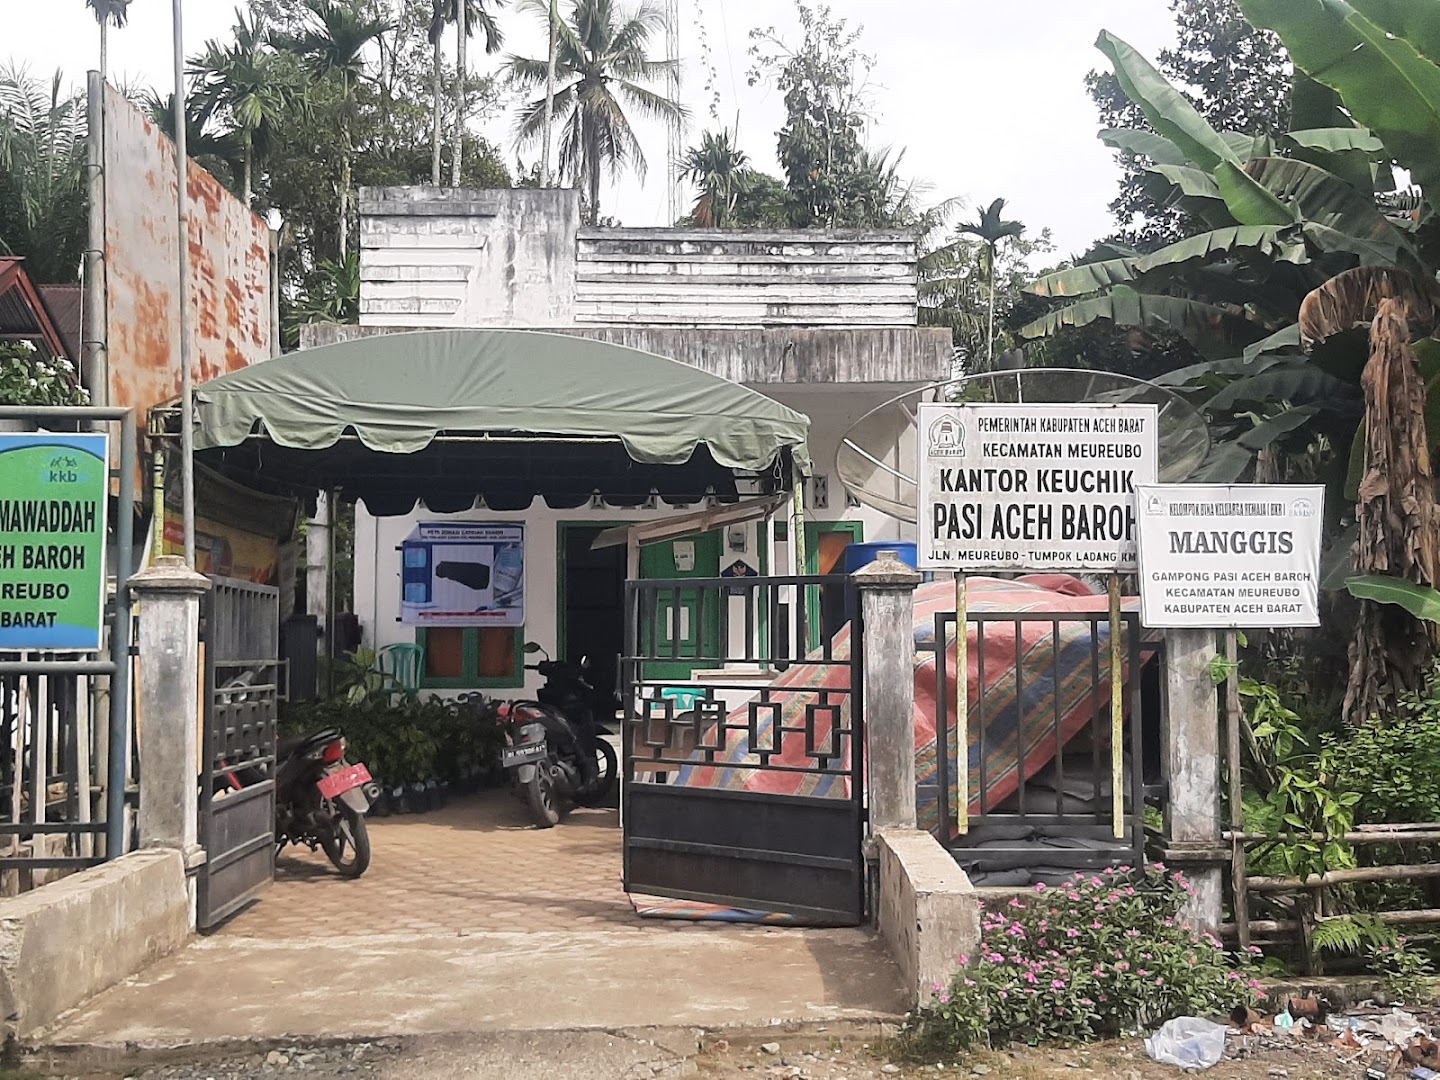 Kantor Keuchik Pasi Aceh Baroh Photo